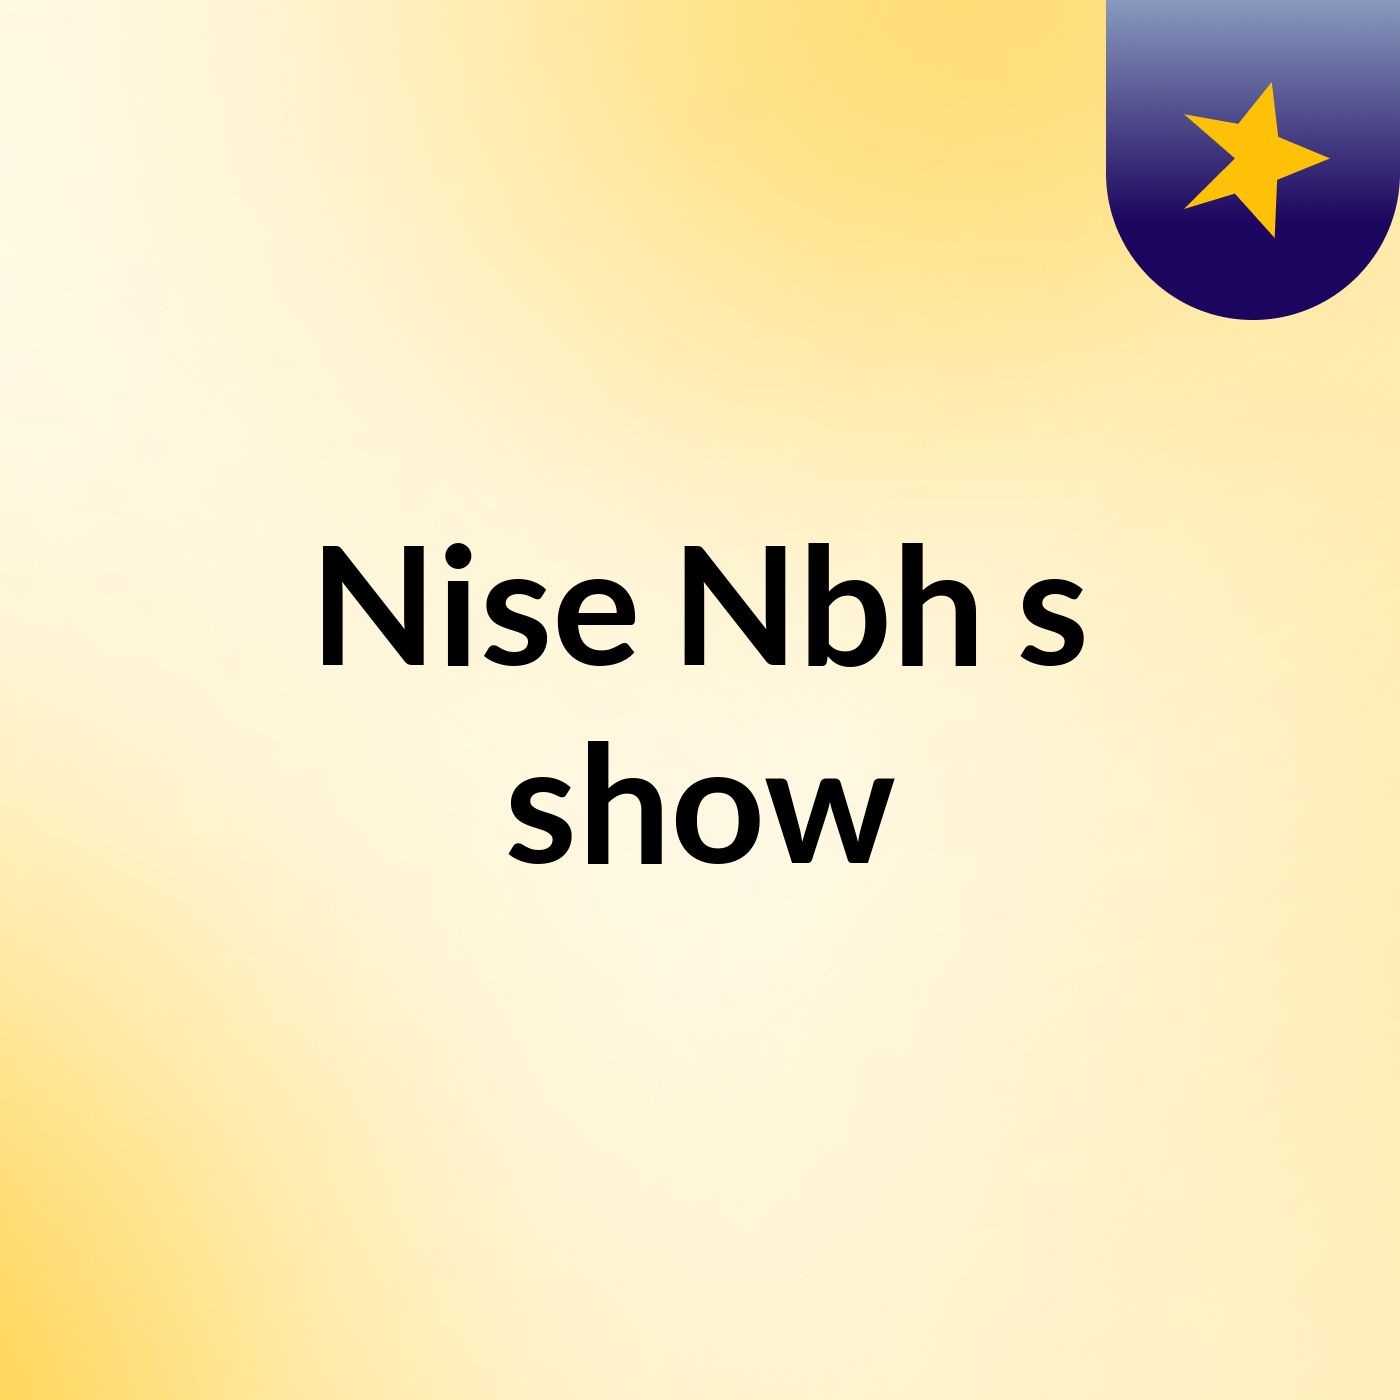 Nise Nbh's show